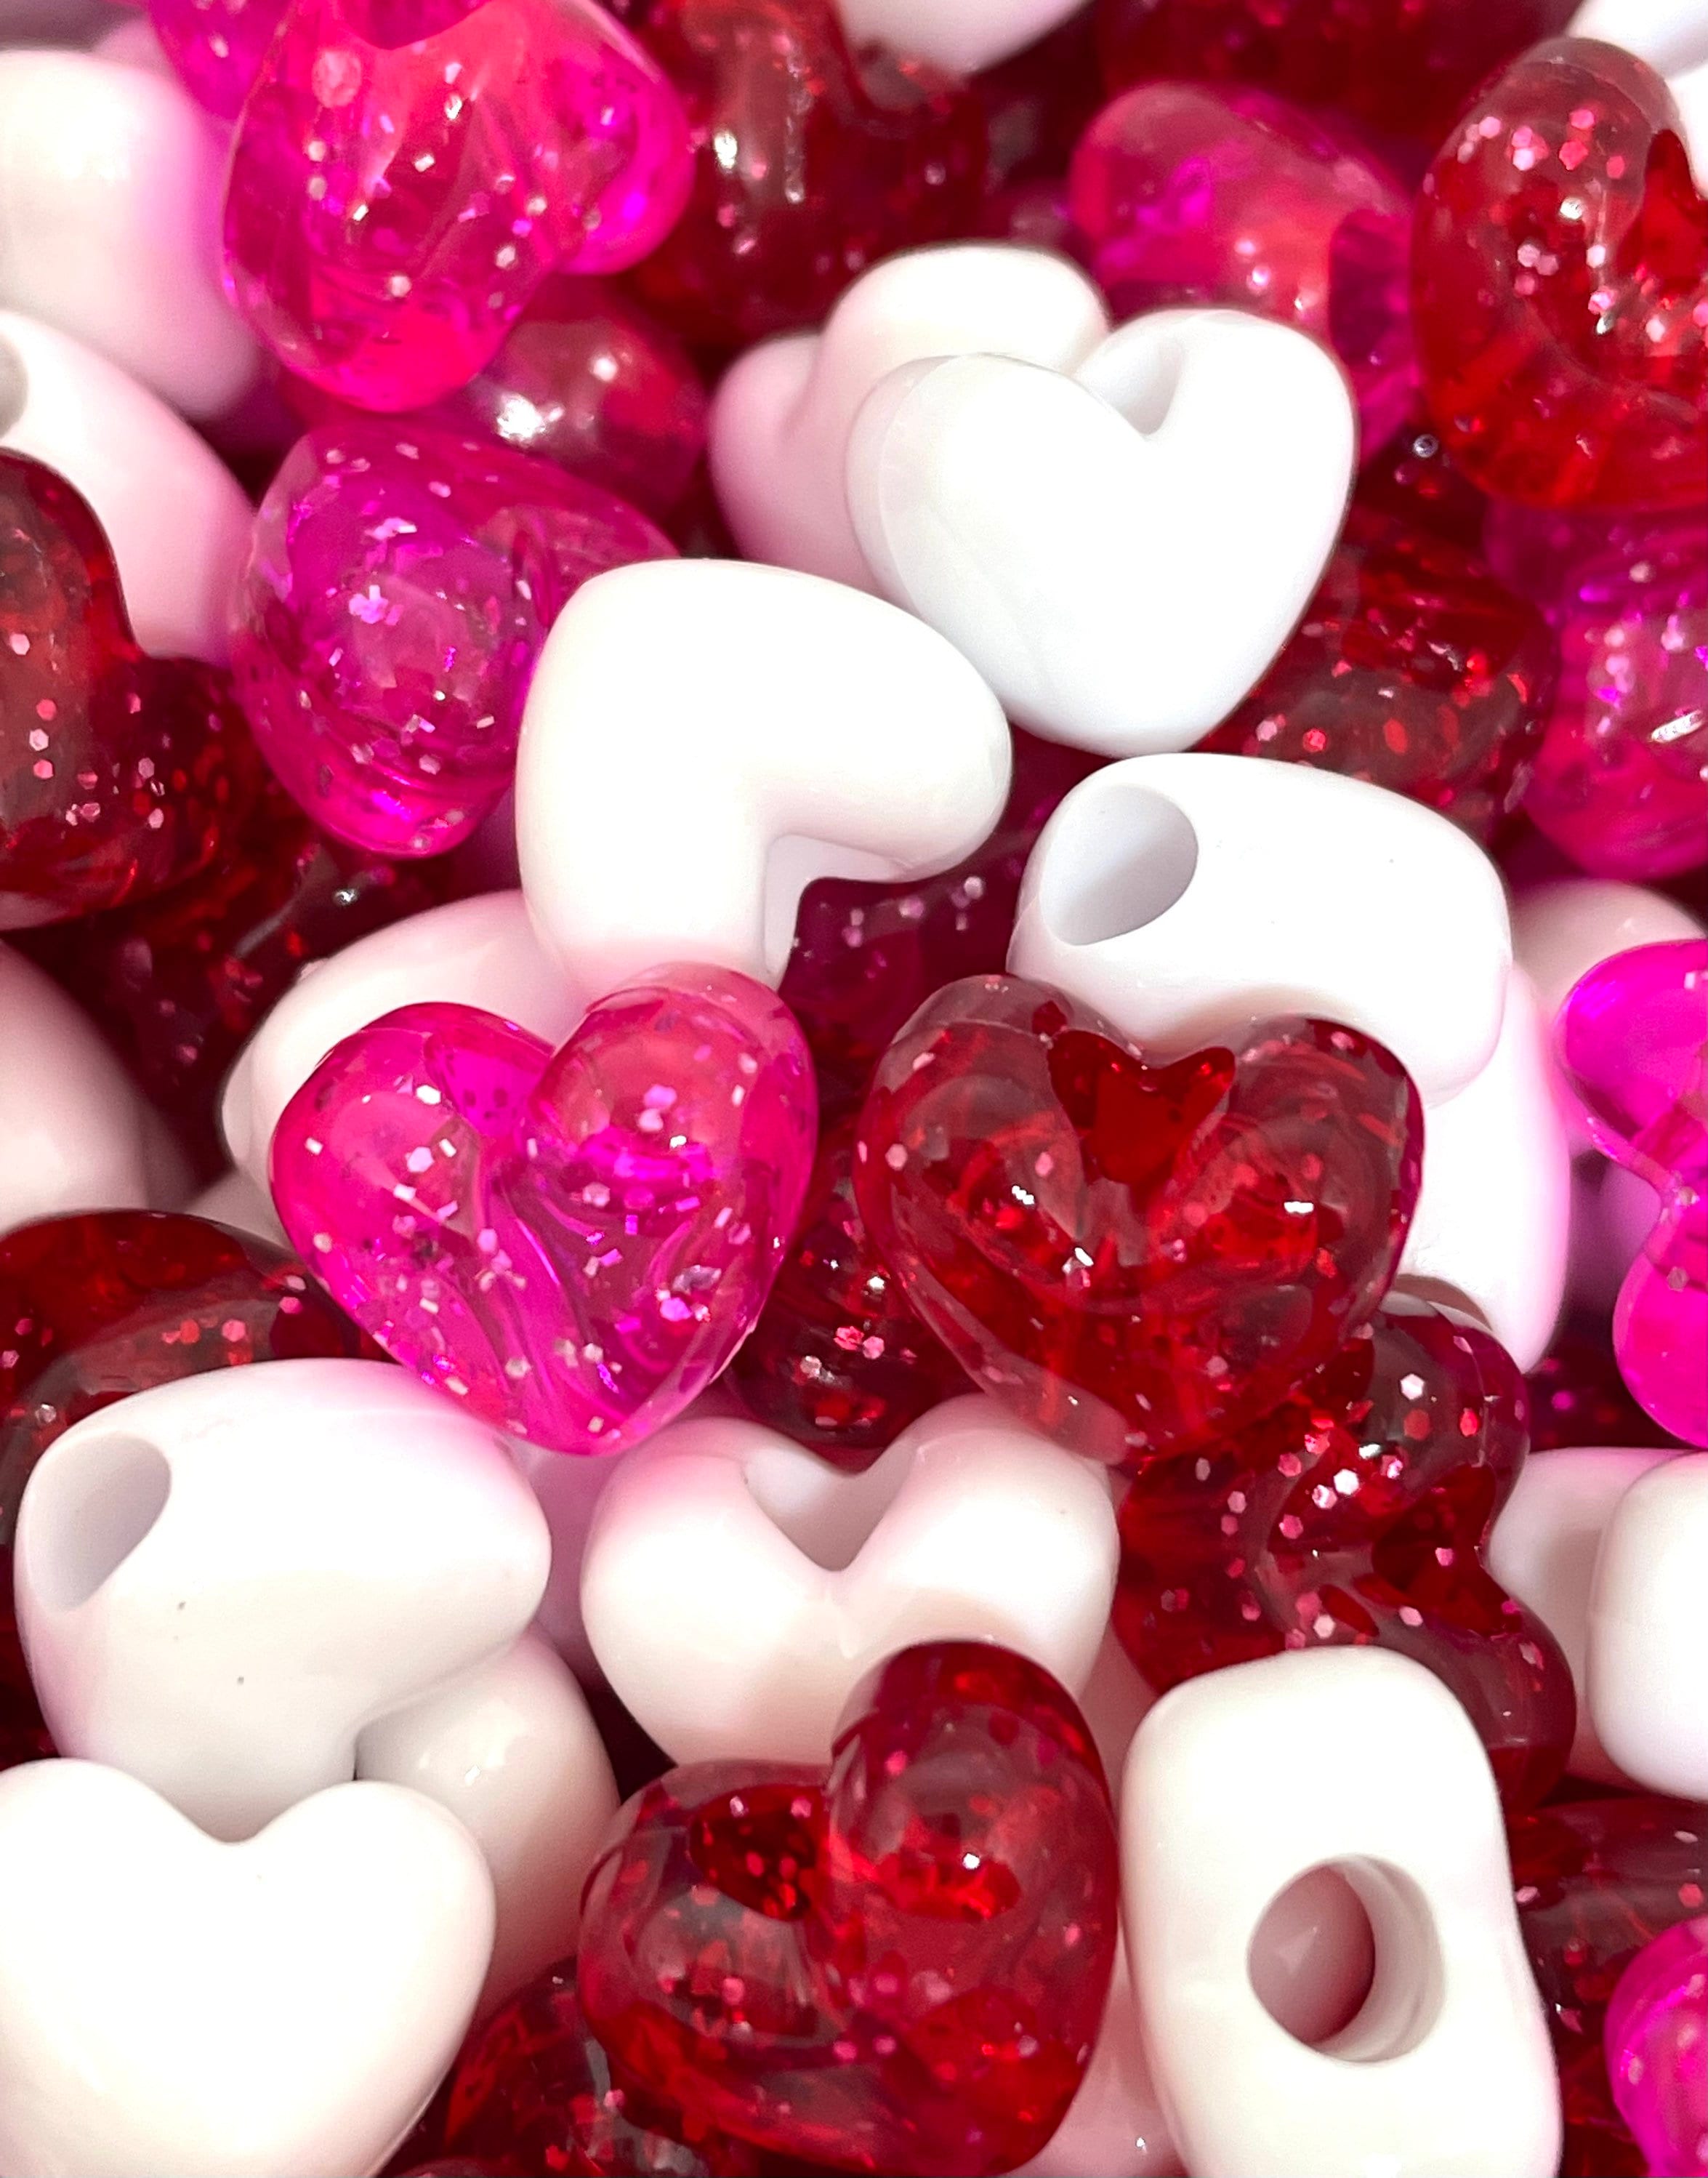 Chunky Heart Beads, Shiny Heart Beads, Heart Charms, Shiny Heart